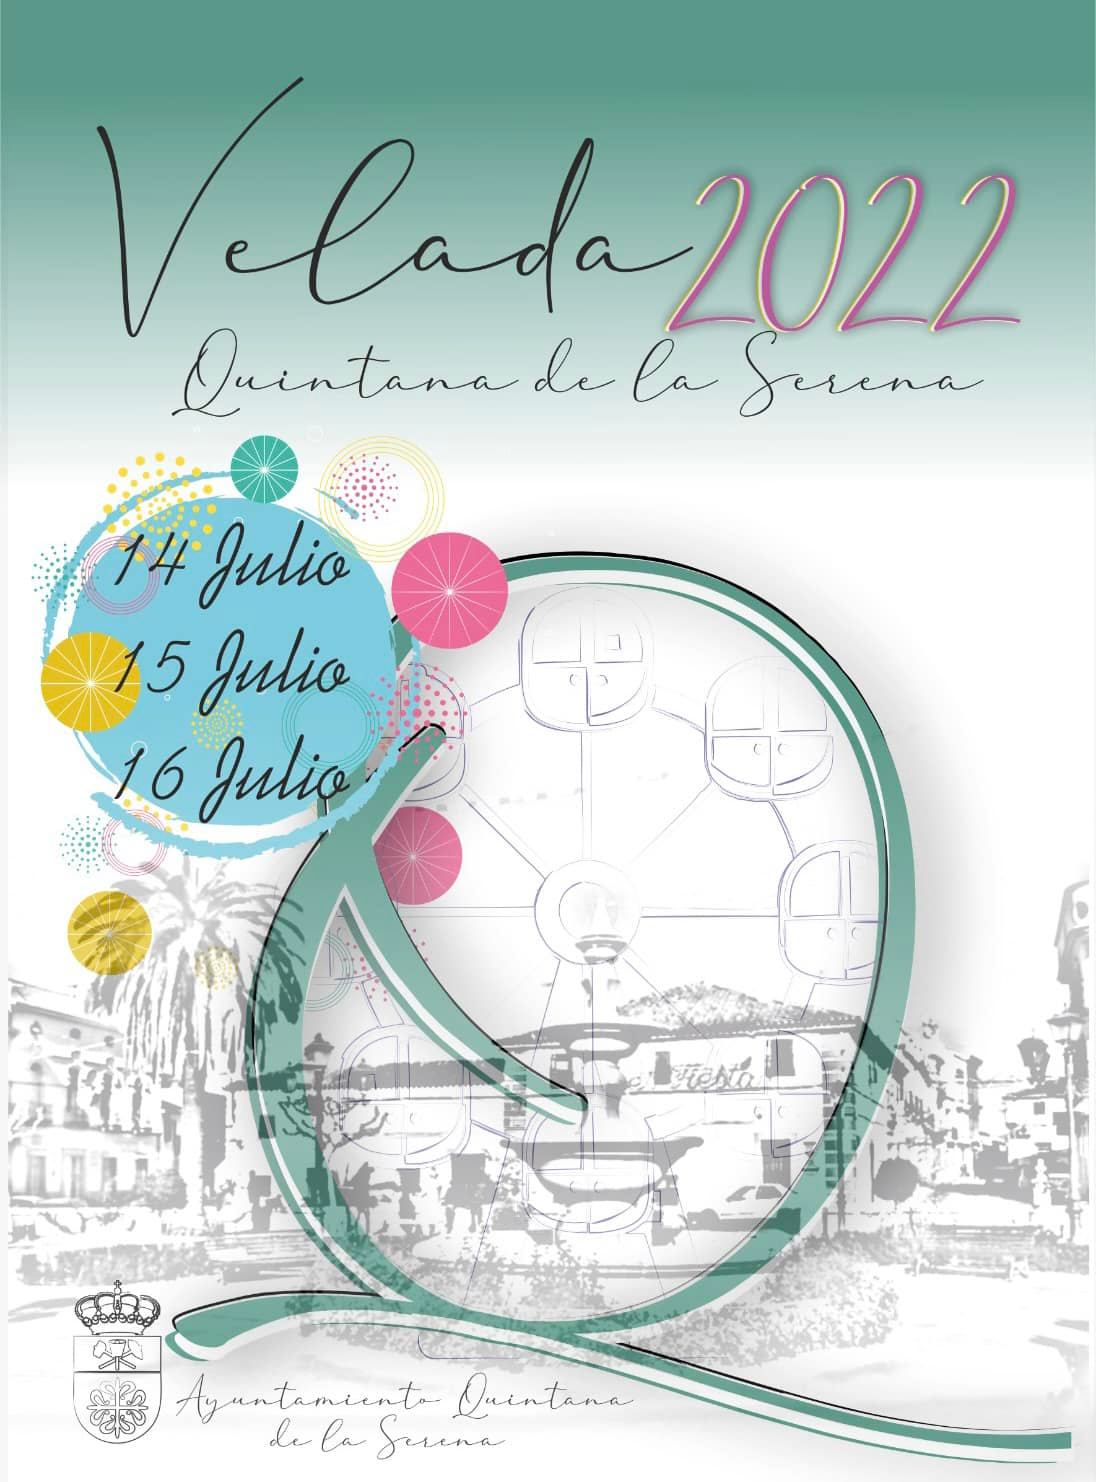 El Ayuntamiento anuncia las fiestas de 'La Velada' 2022